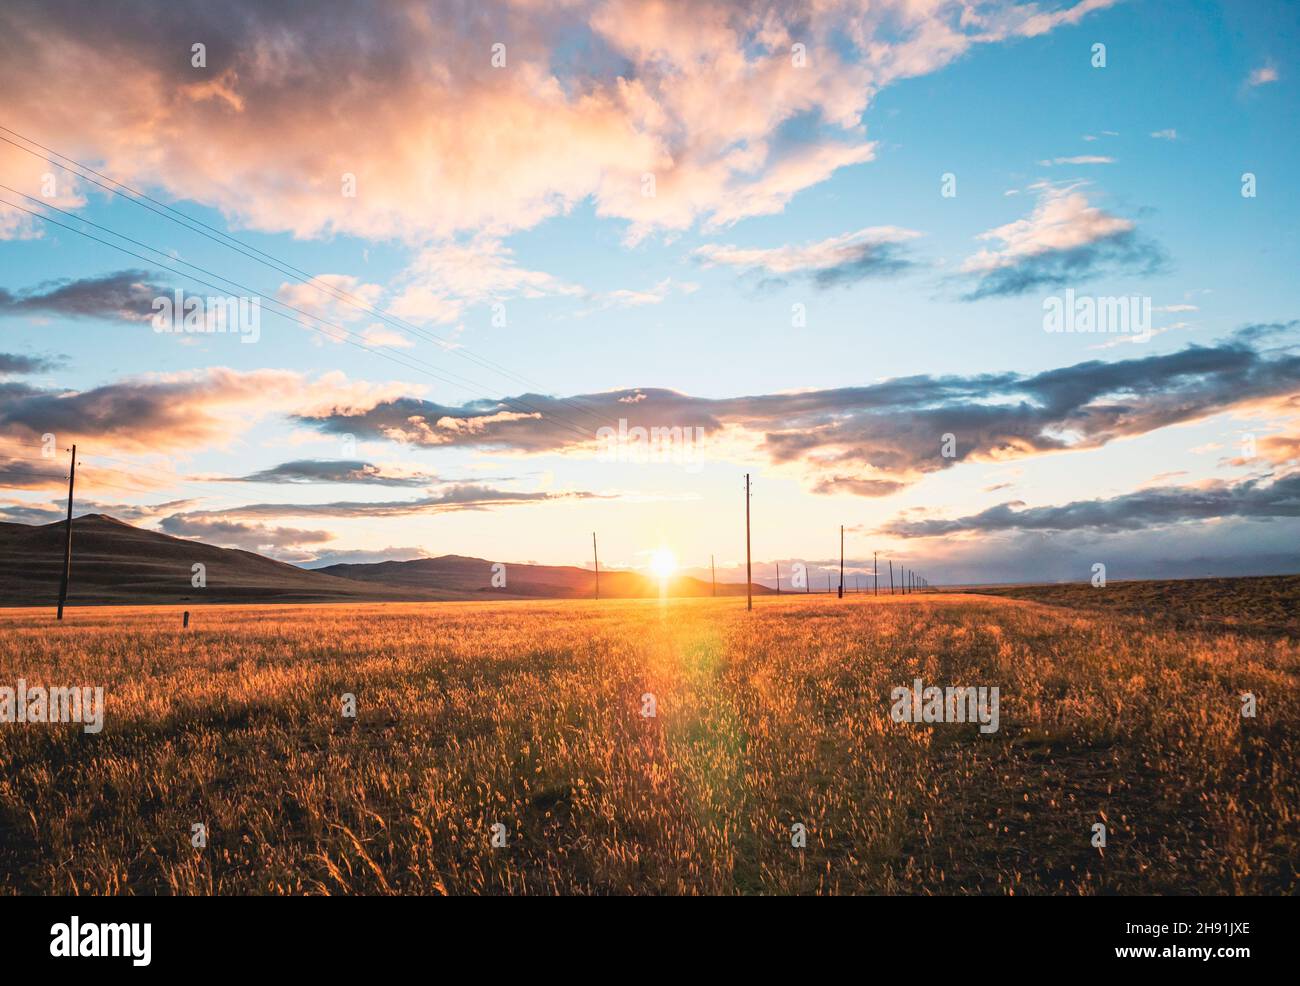 Paesaggio rurale mozzafiato. Tramonto sul campo di grano dorato. Cielo blu con spettacolari nuvole al tramonto. Il sole si abbassa. Estate. Foto Stock